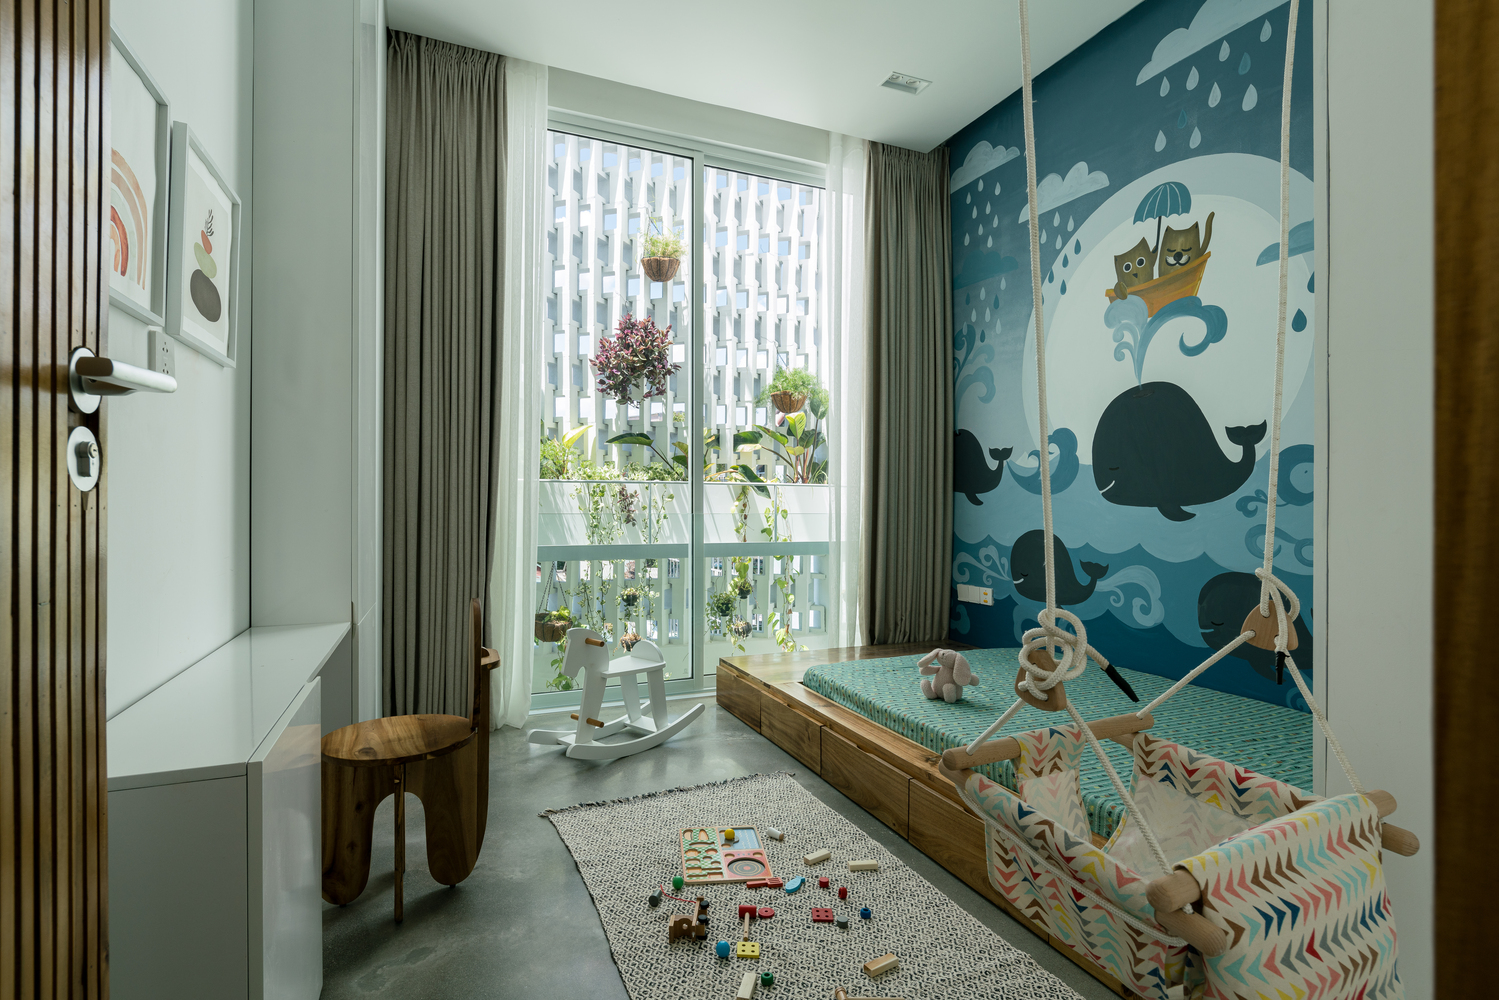 Phòng ngủ trẻ em được bài trí với những tông màu tươi sáng hơn, decor tường ngộ nghĩnh, phù hợp với độ tuổi của bé.